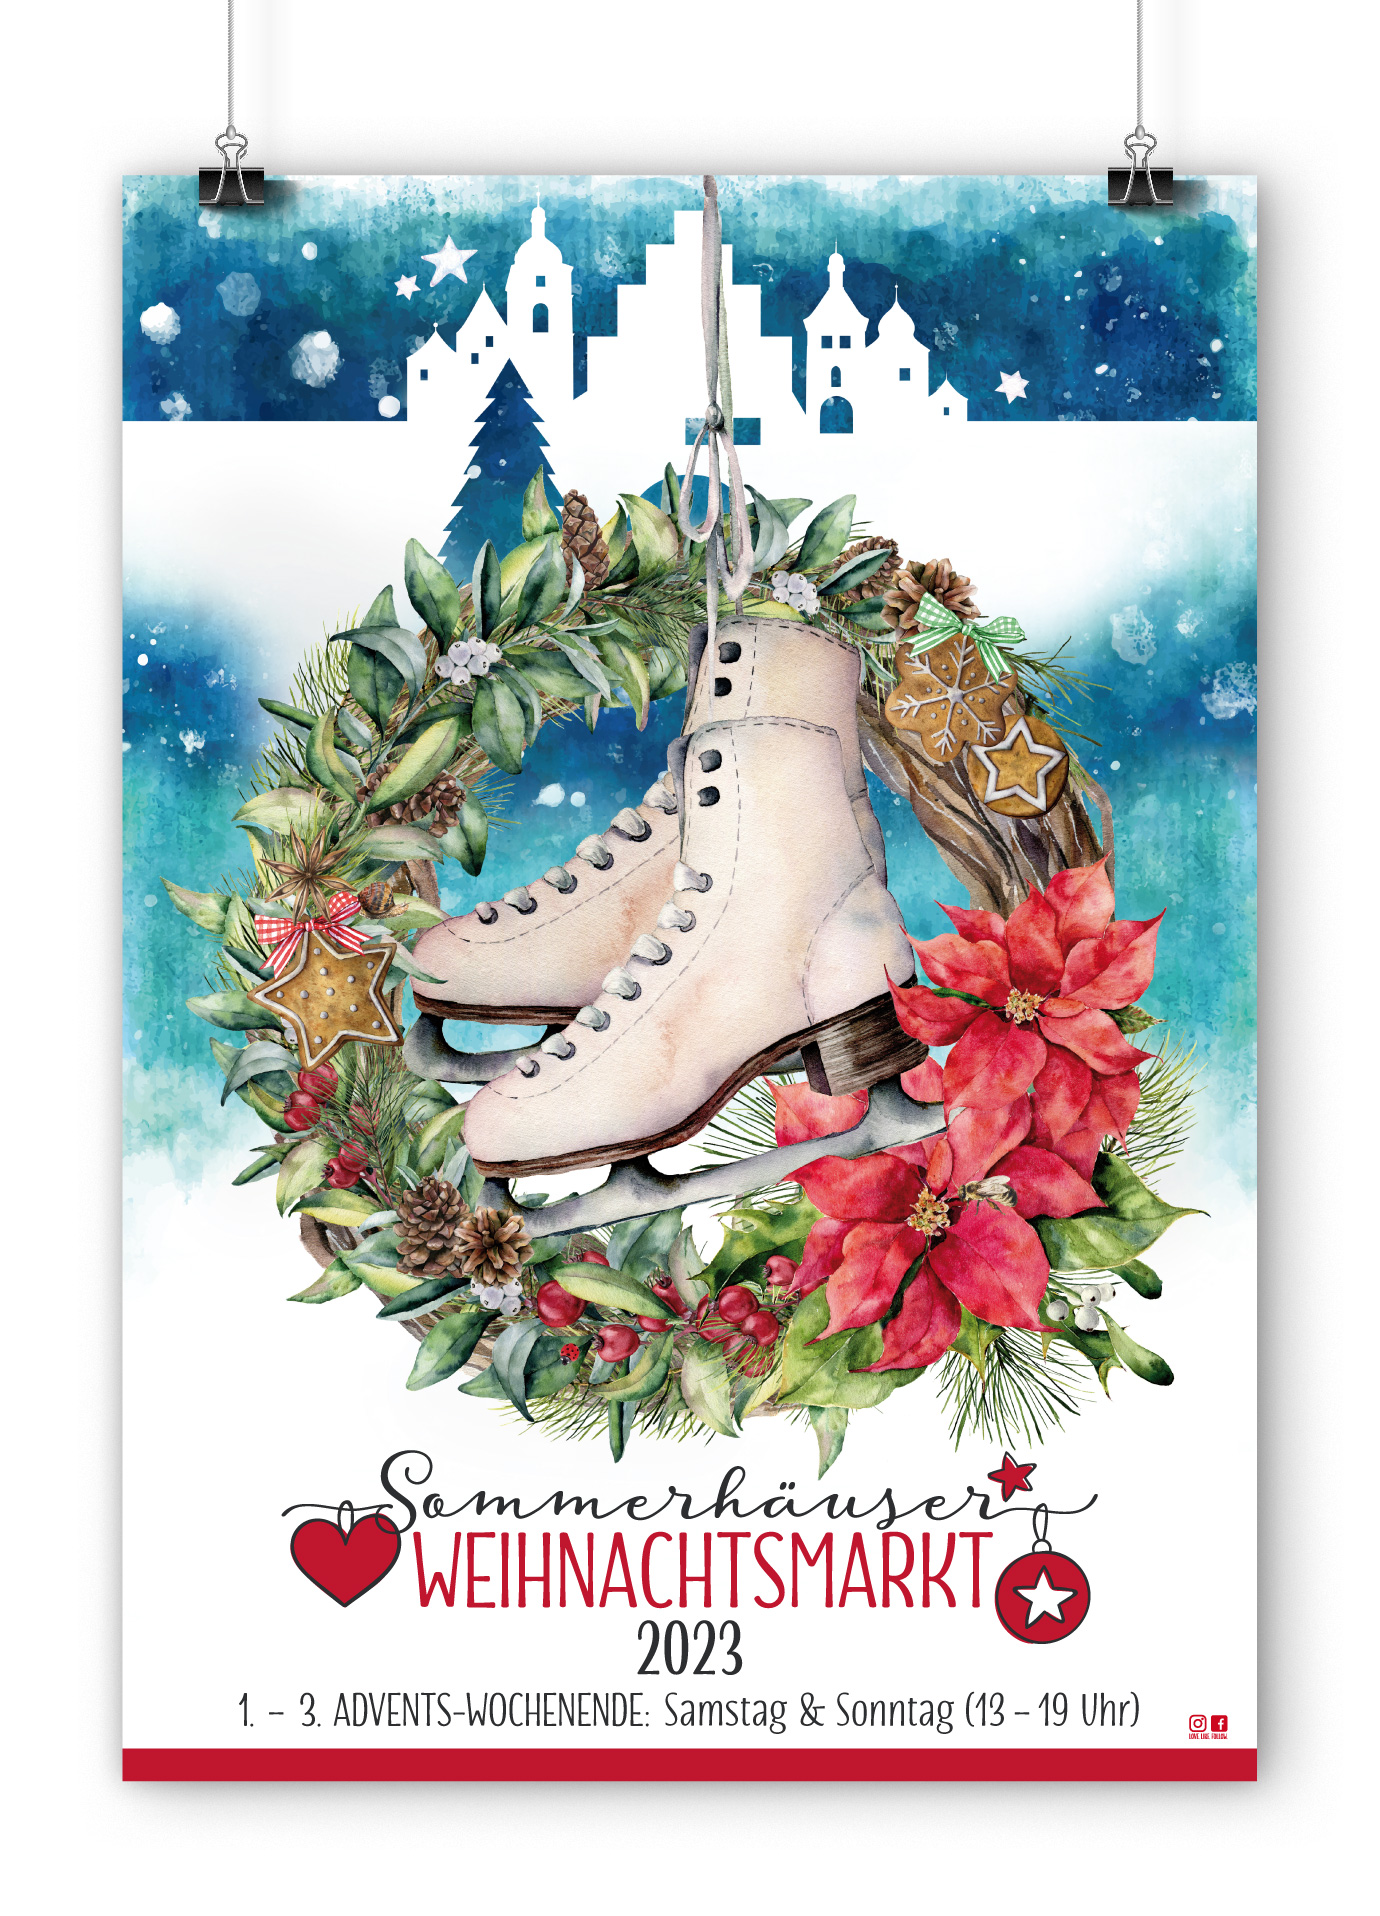 Weihnachtsmarkt Sommerhausen 2023; Plakatdesign by Buero Maiwald